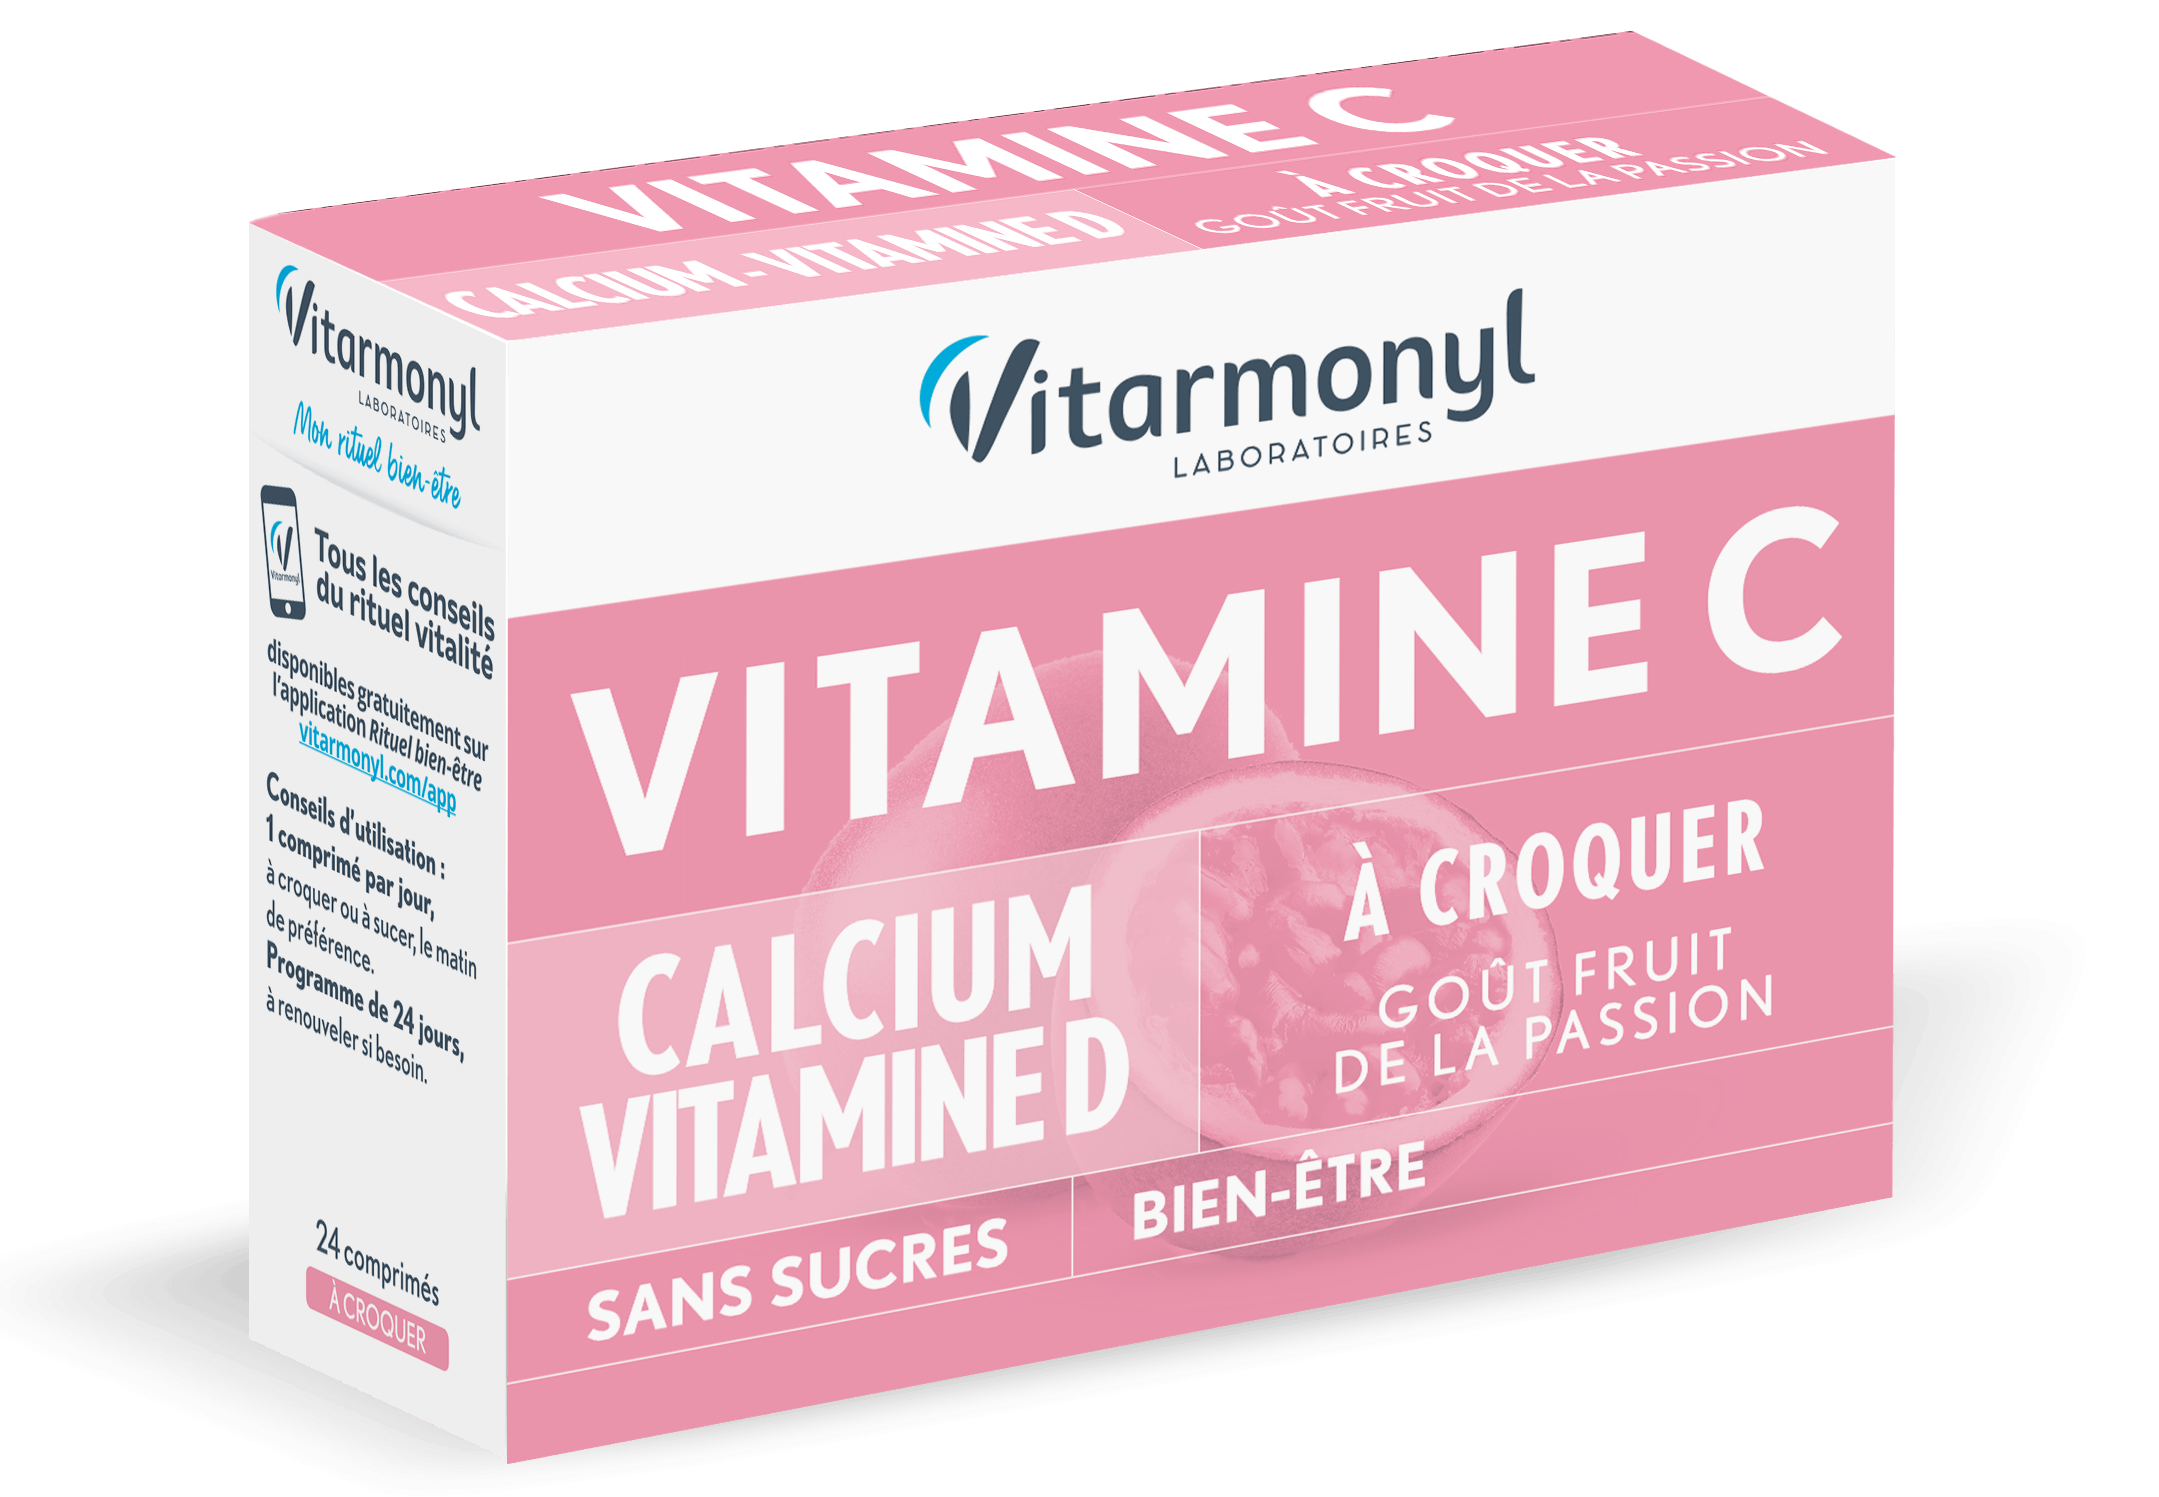 Vitamine C Calcium Vitamine D